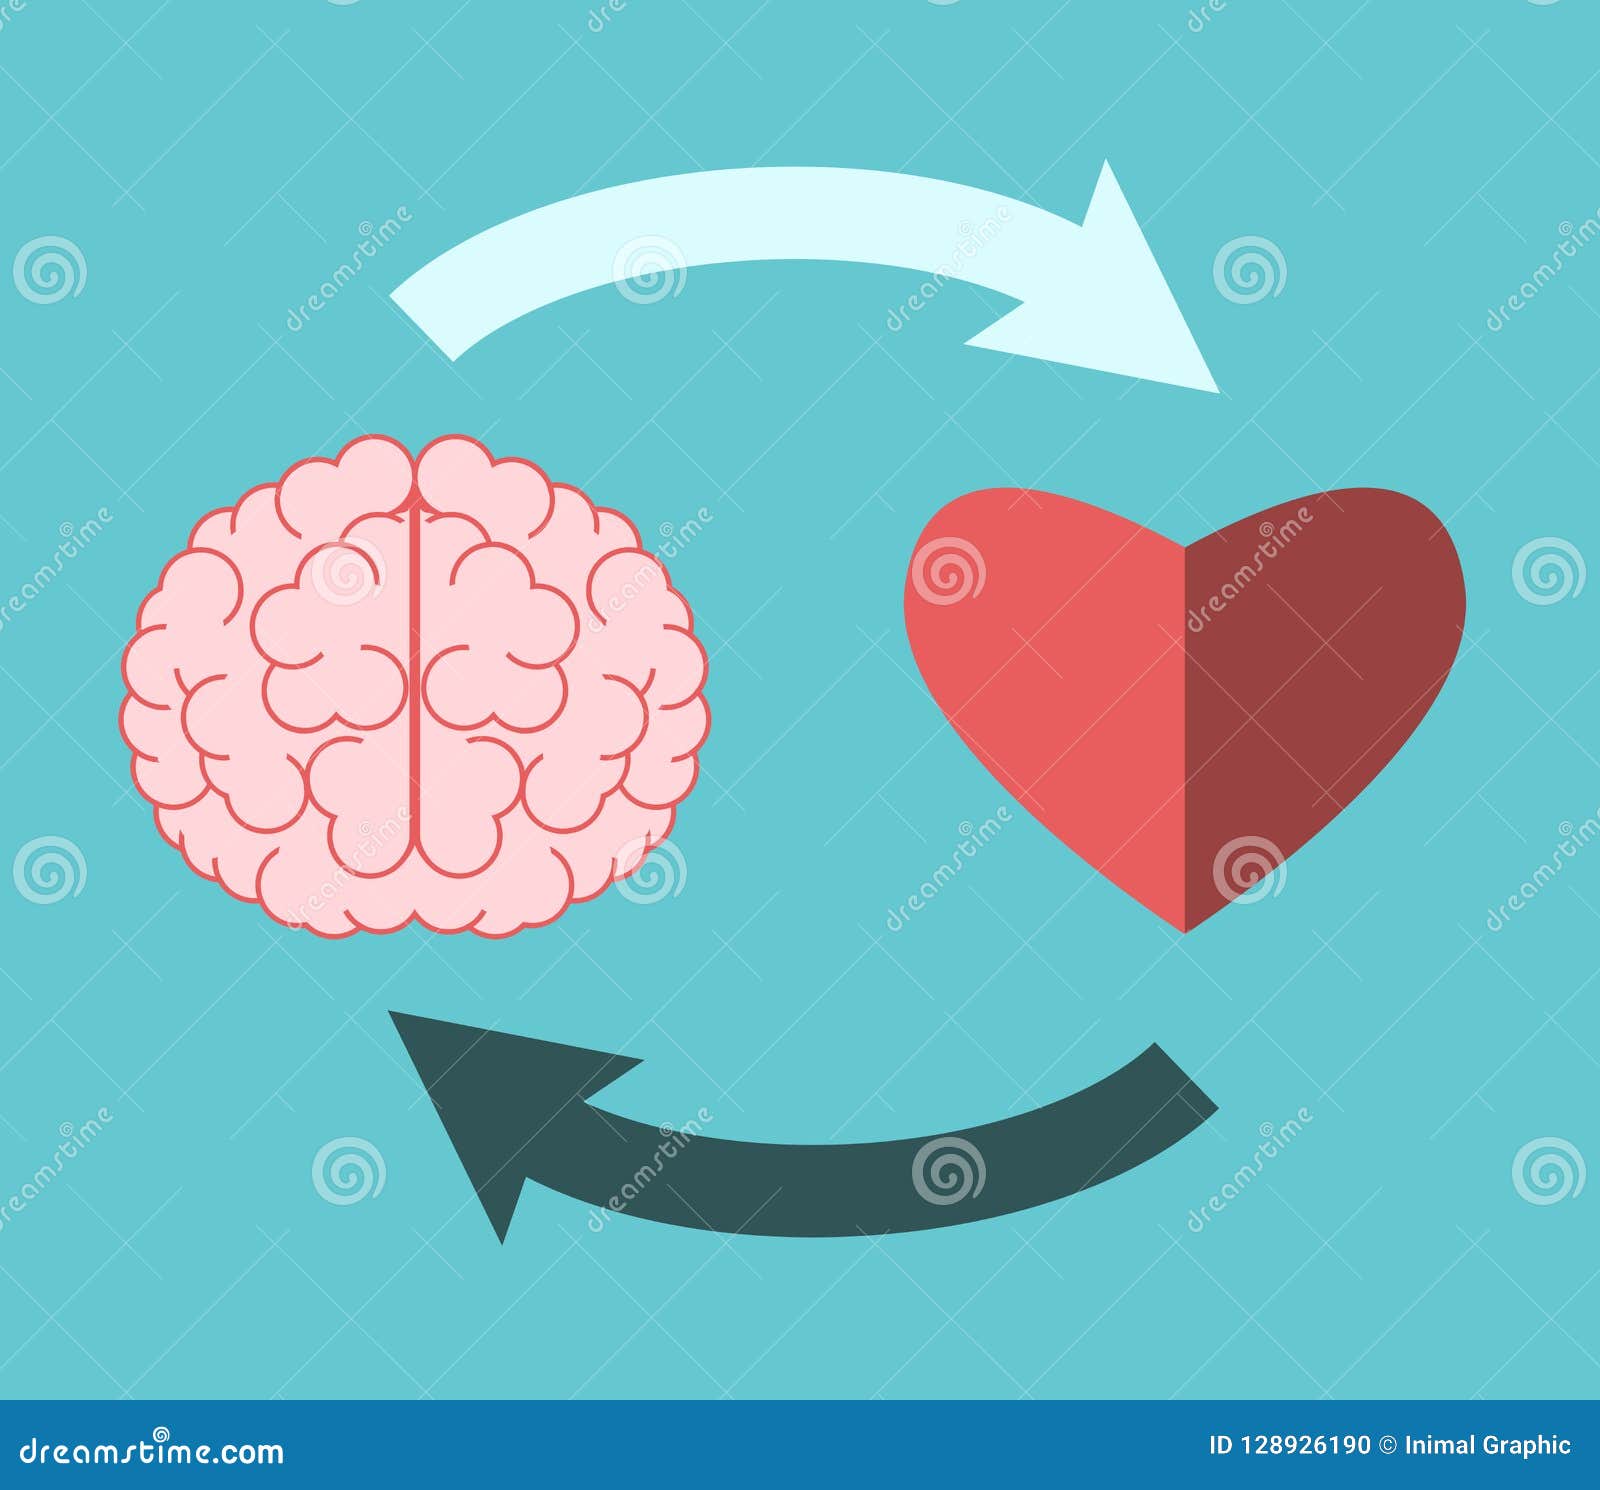 Dissertation heart and brain interrelation